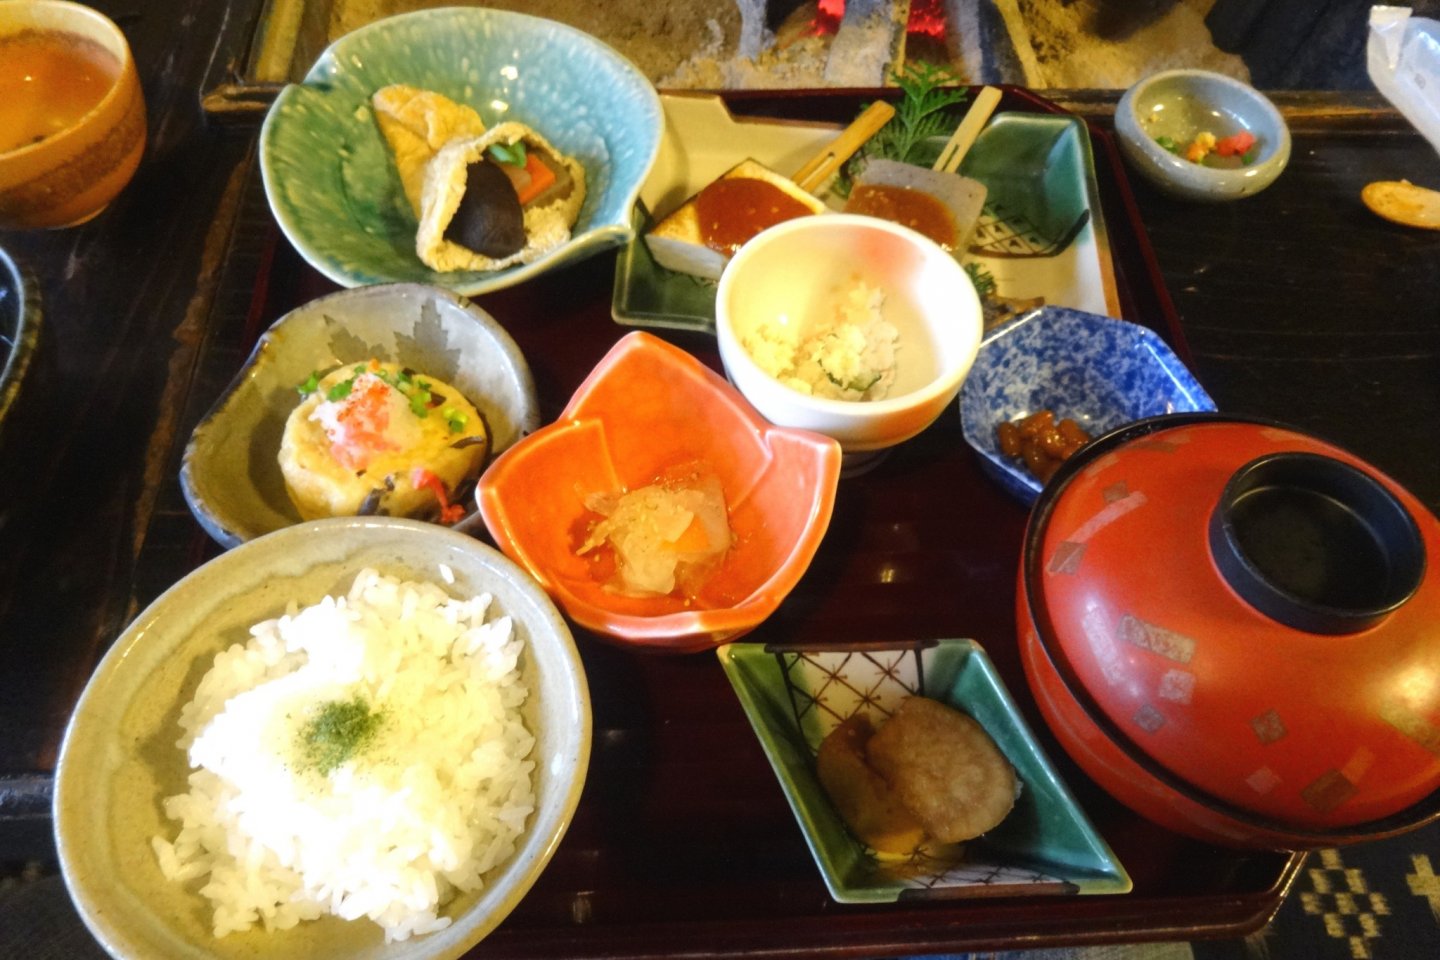 The "plum" set meal at Tofu Kissho